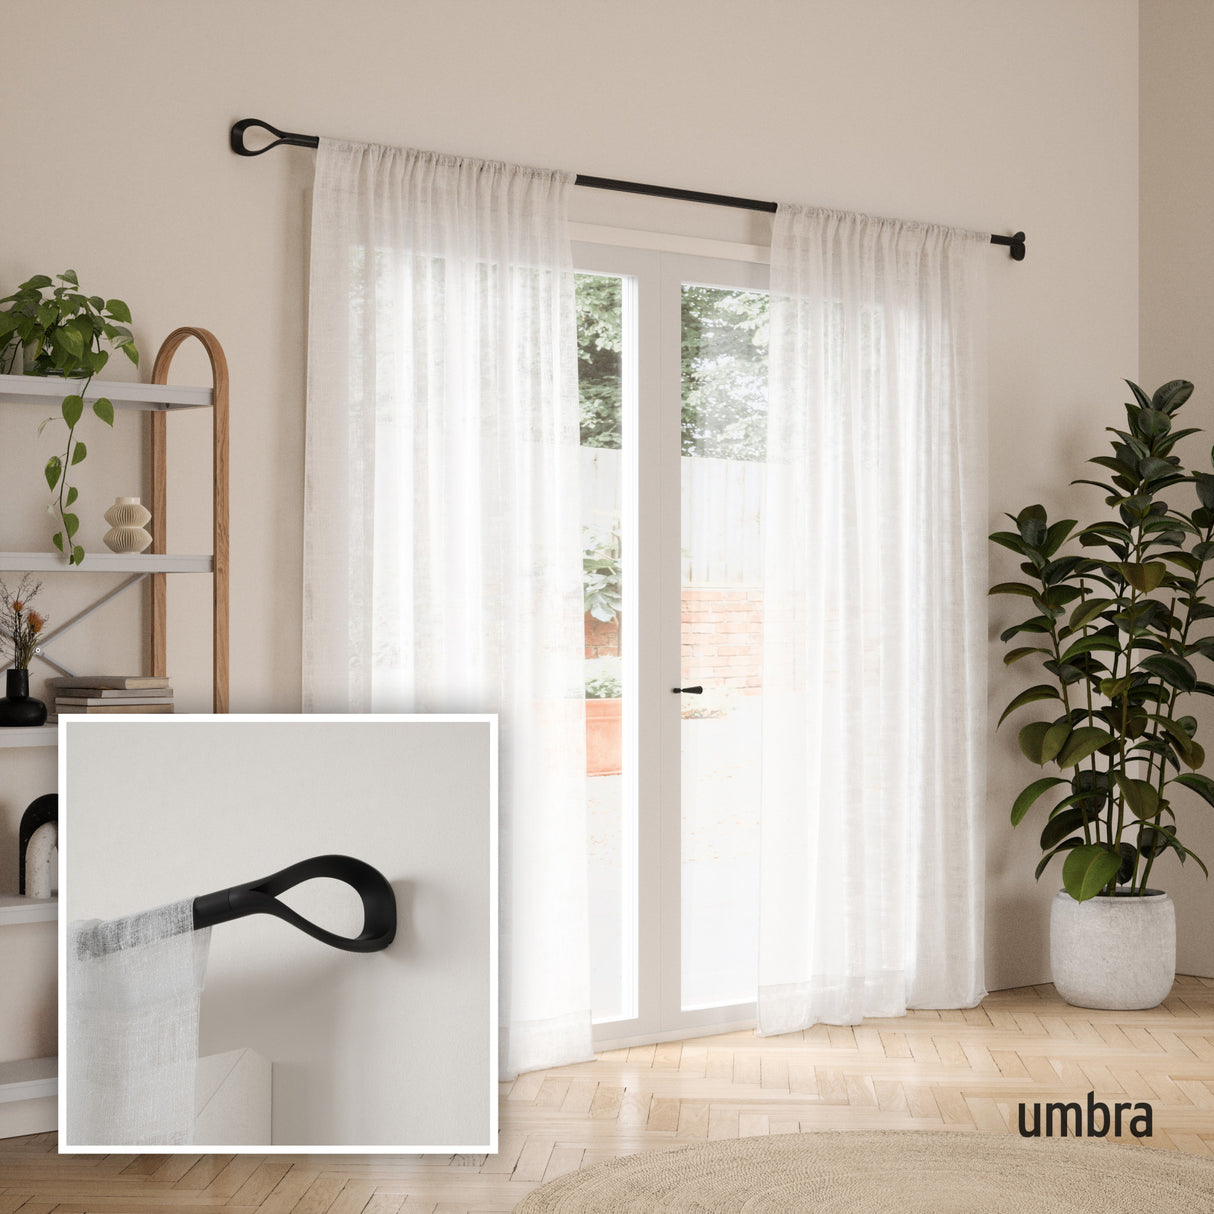 Single Curtain Rods | color: Matte-Black | size: 42-120" (107-305 cm) | diameter: 1" (2.5 cm)